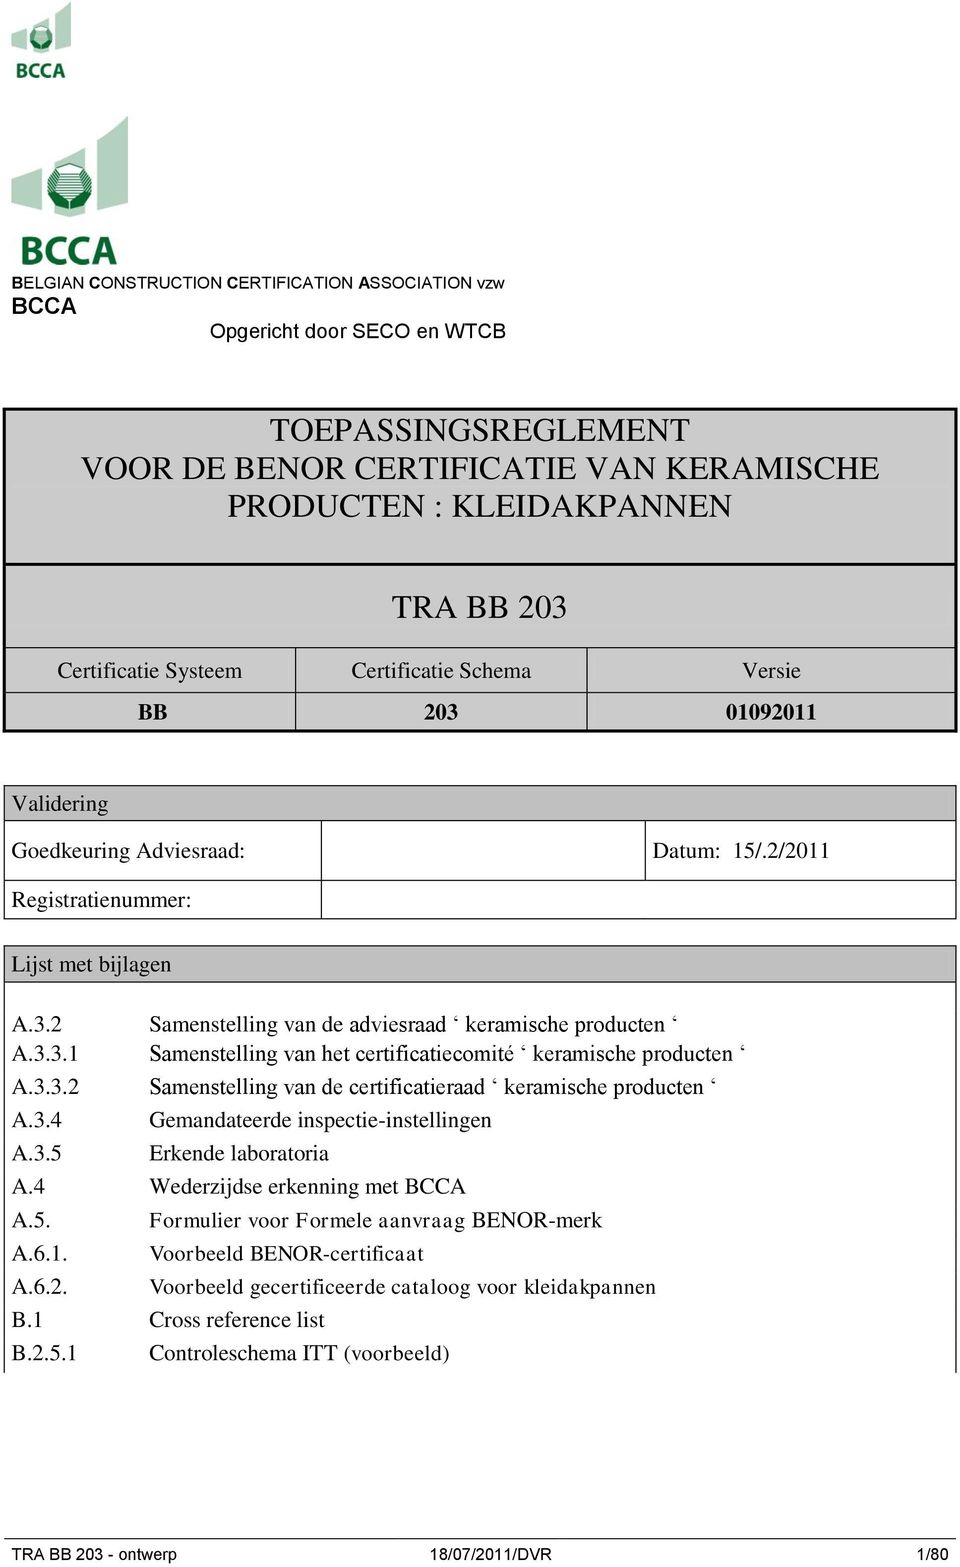 3.3.1 Samenstelling van het certificatiecomité keramische producten A.3.3.2 Samenstelling van de certificatieraad keramische producten A.3.4 A.3.5 Gemandateerde inspectie-instellingen Erkende laboratoria A.